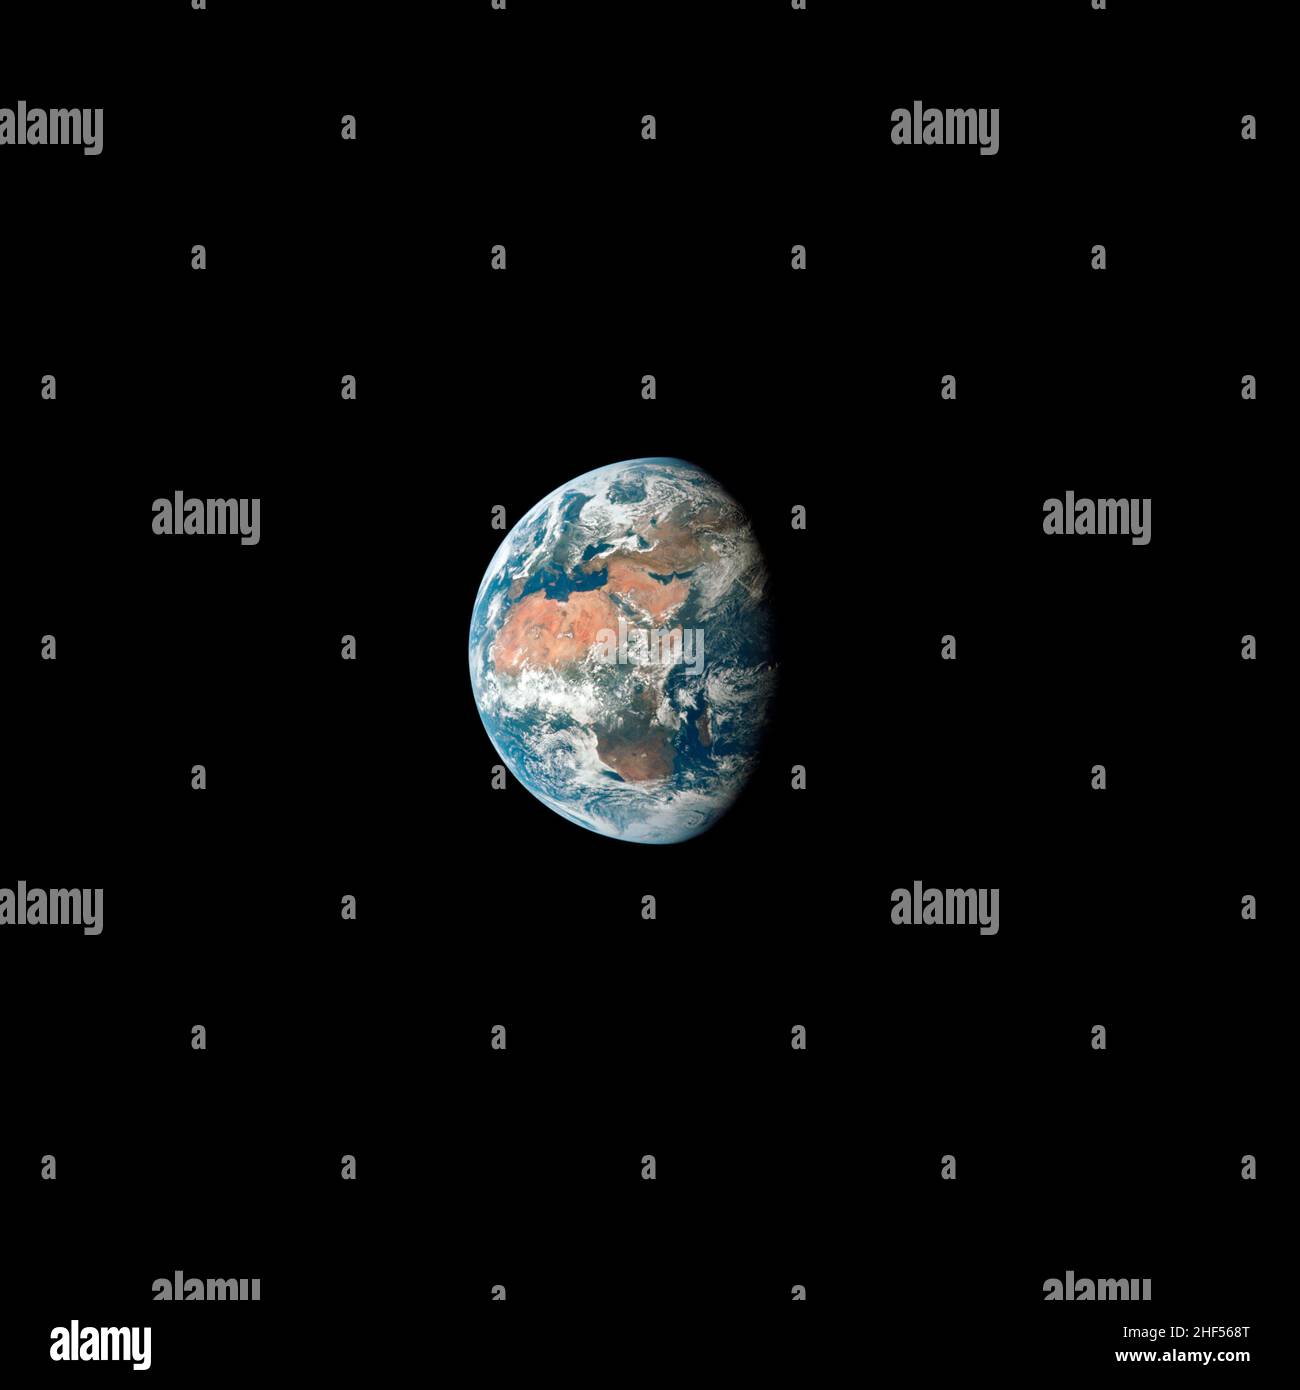 Vue de la Terre, montrant l'Afrique, l'Europe et l'Asie prises de l'engin spatial Apollo 11 au cours de sa côte trans-lunaire vers la lune. Banque D'Images